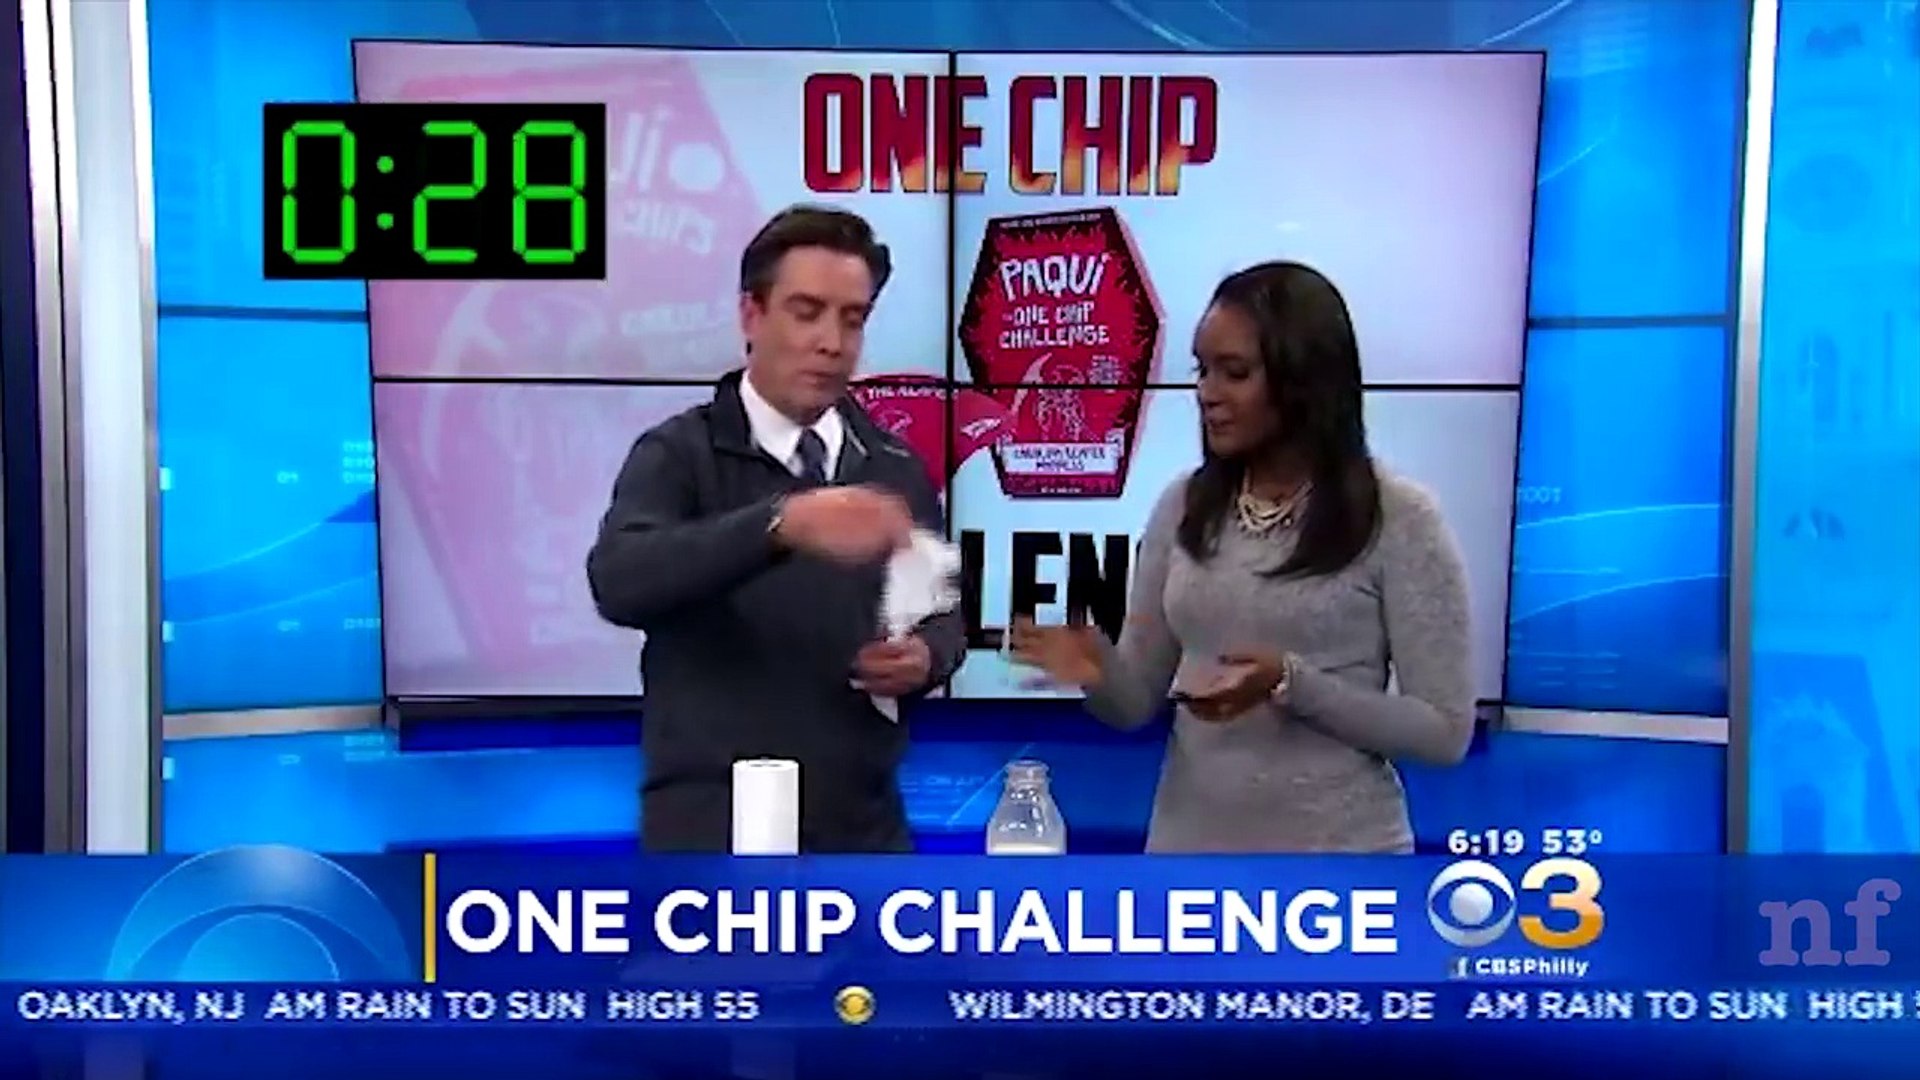 De quoi est composée la One Chip Challenge, la chips ultra piquante retirée  des rayons ?